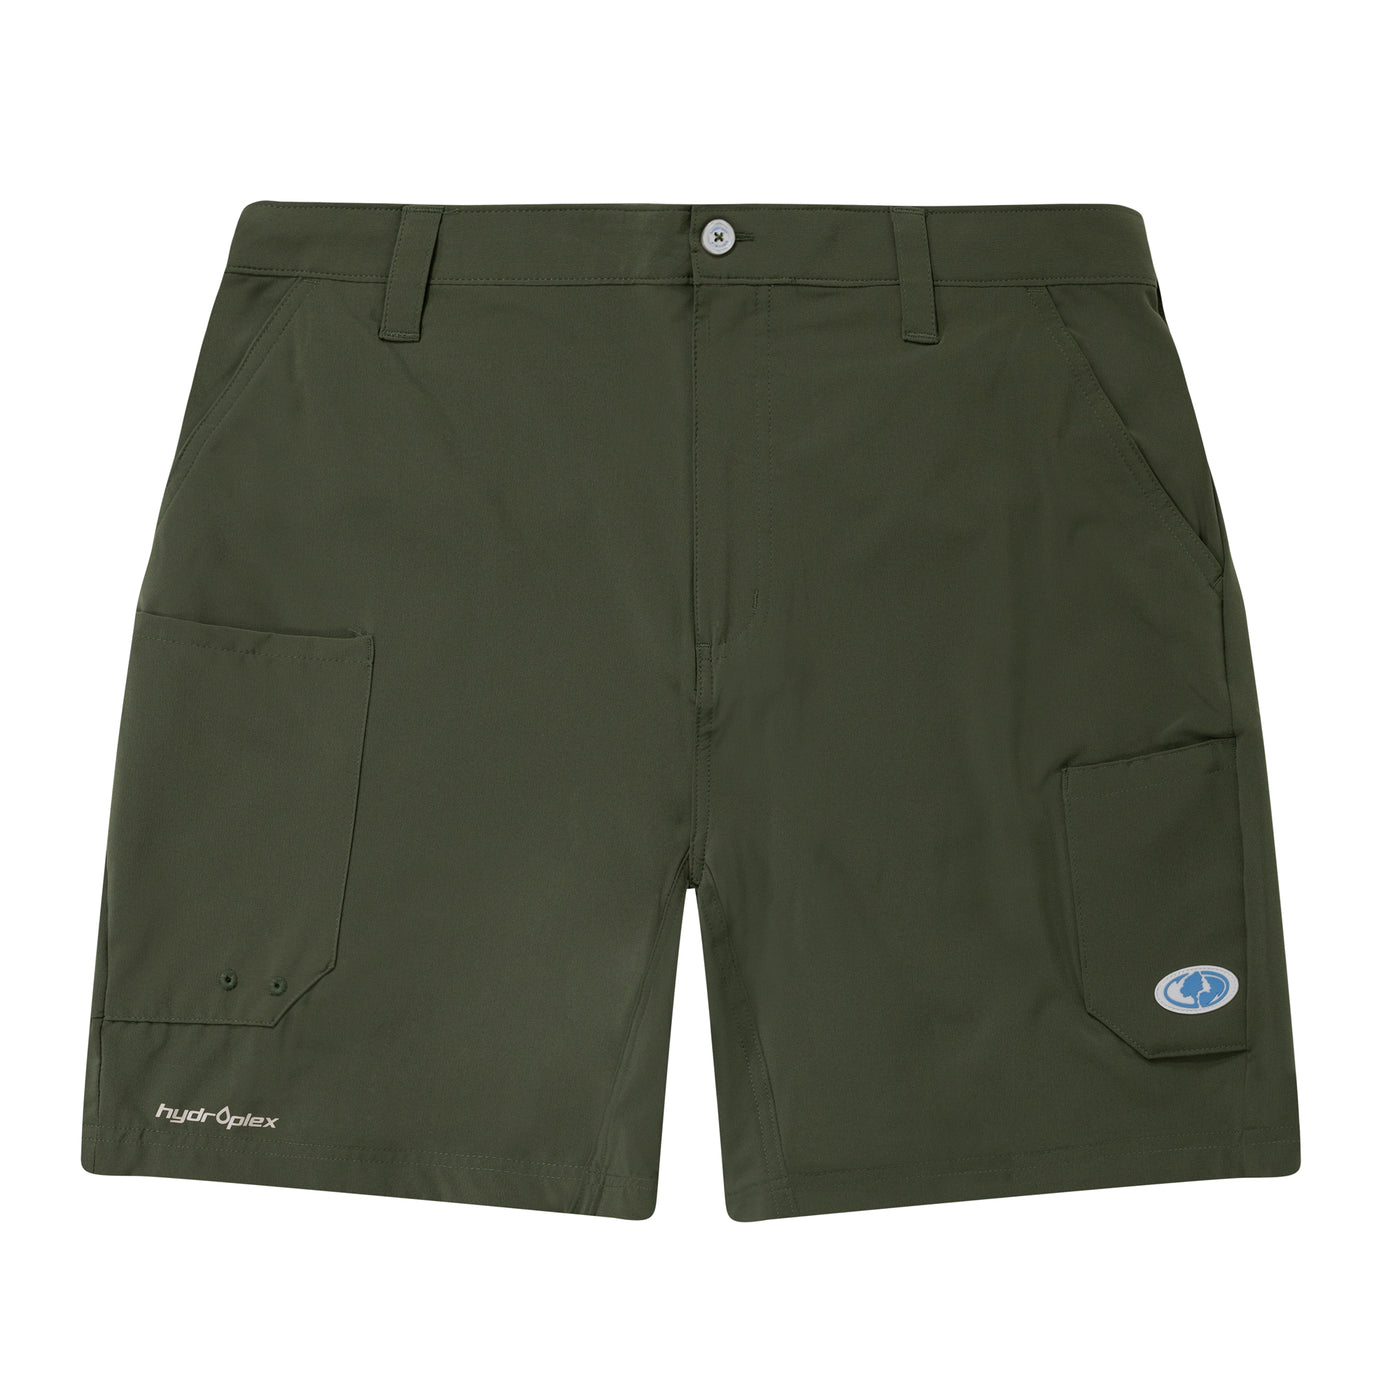 Mossy Oak Men's Fishing Board Shorts